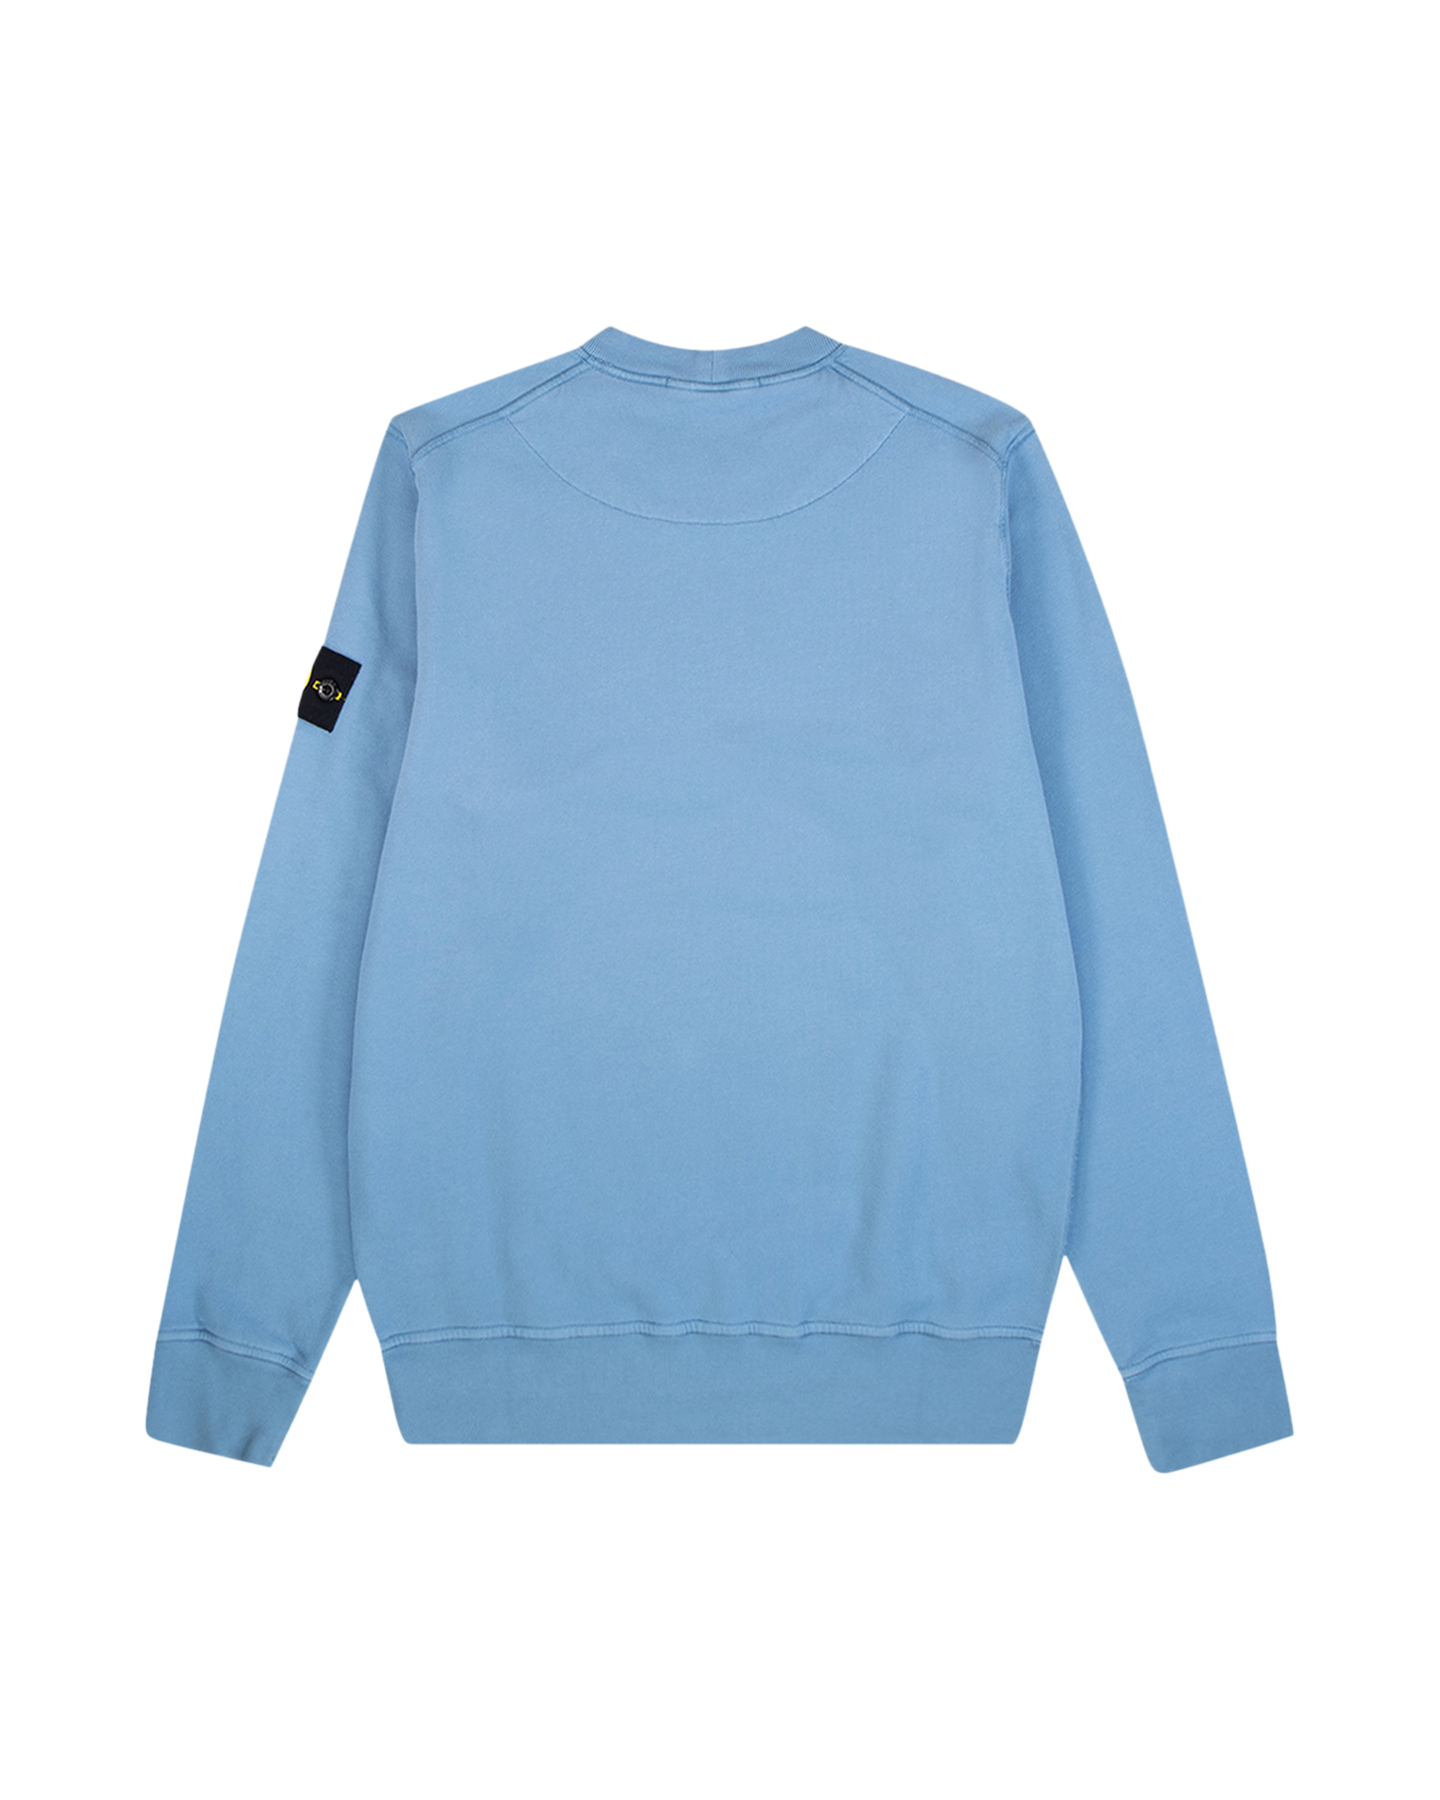 Mentaliteit wandelen herten Stone Island Brushed Cotton Fleece Garment Dyed Sweatshirt Blauw | Coef Men